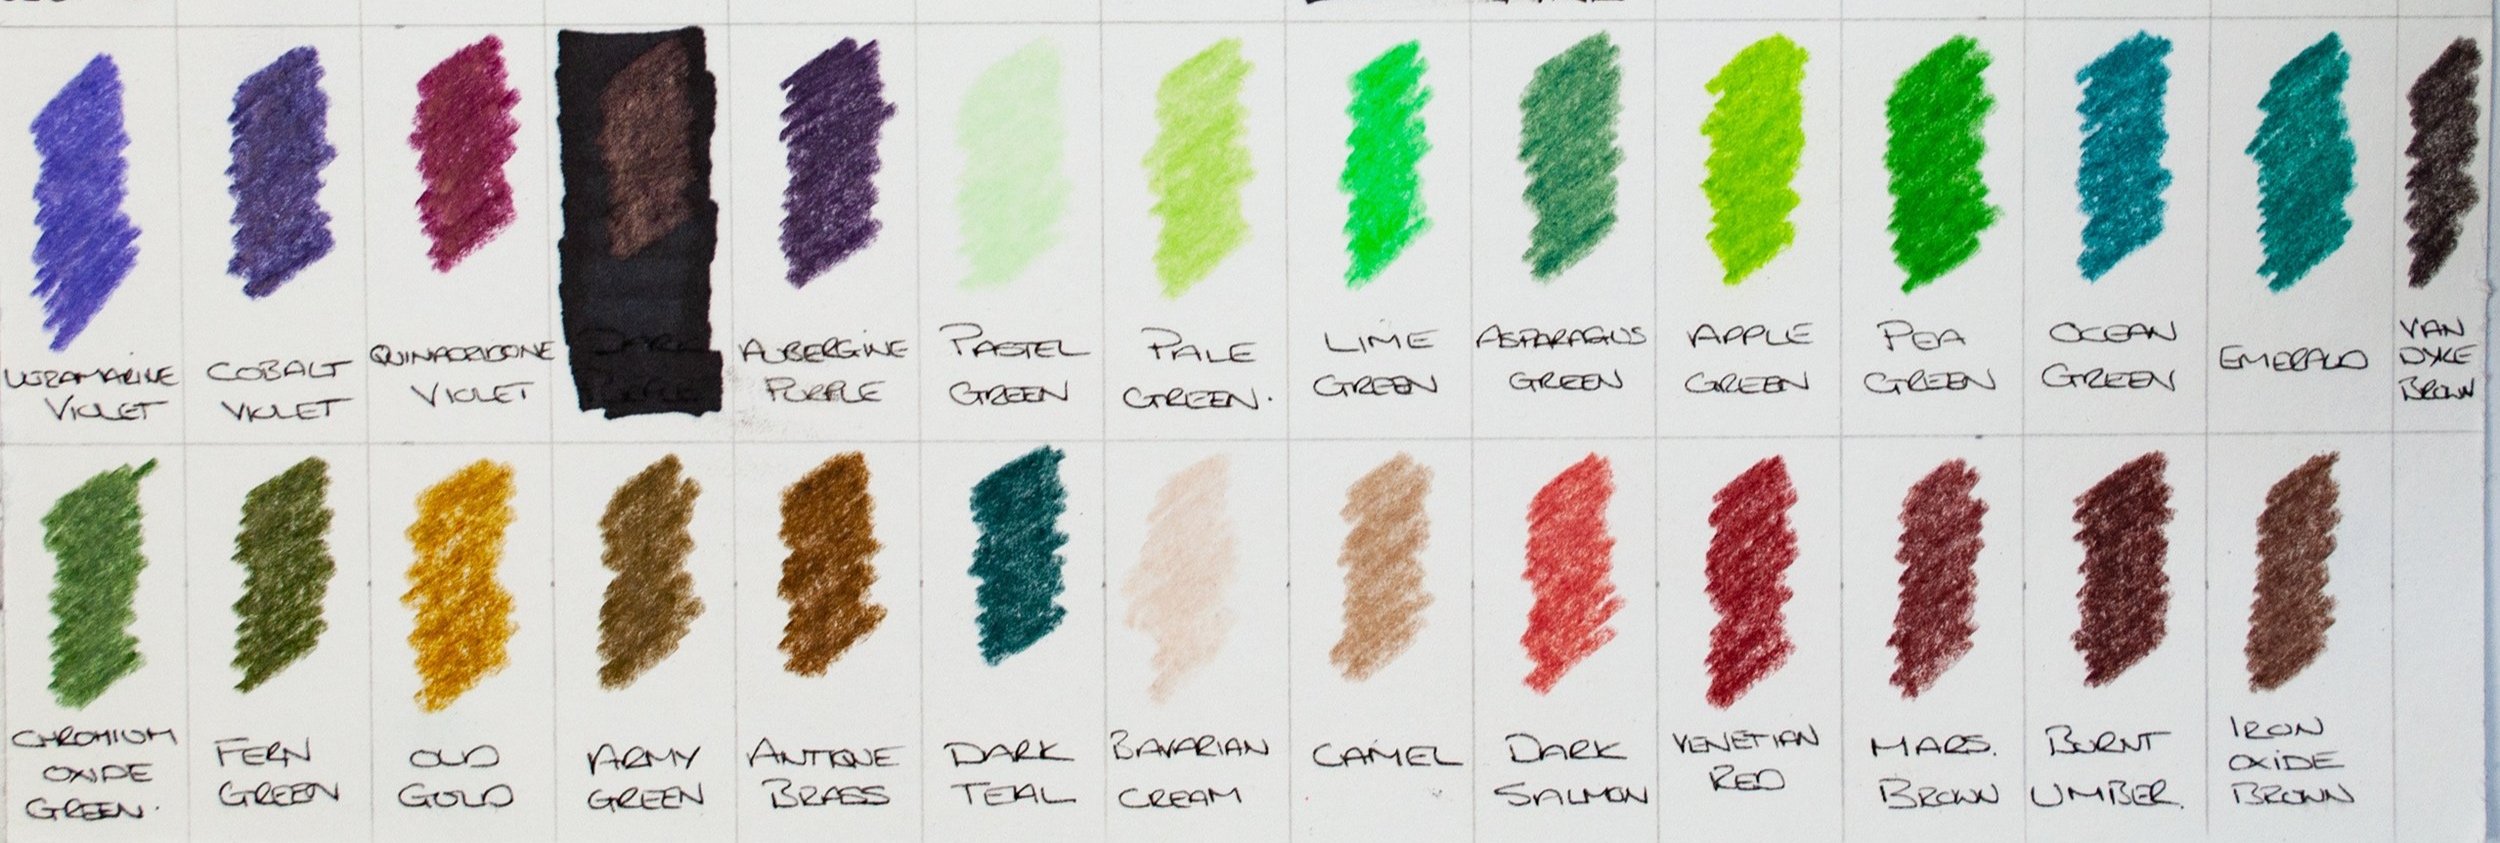 Arrtx 126 Colored Pencils : Présentation et Colo Test 